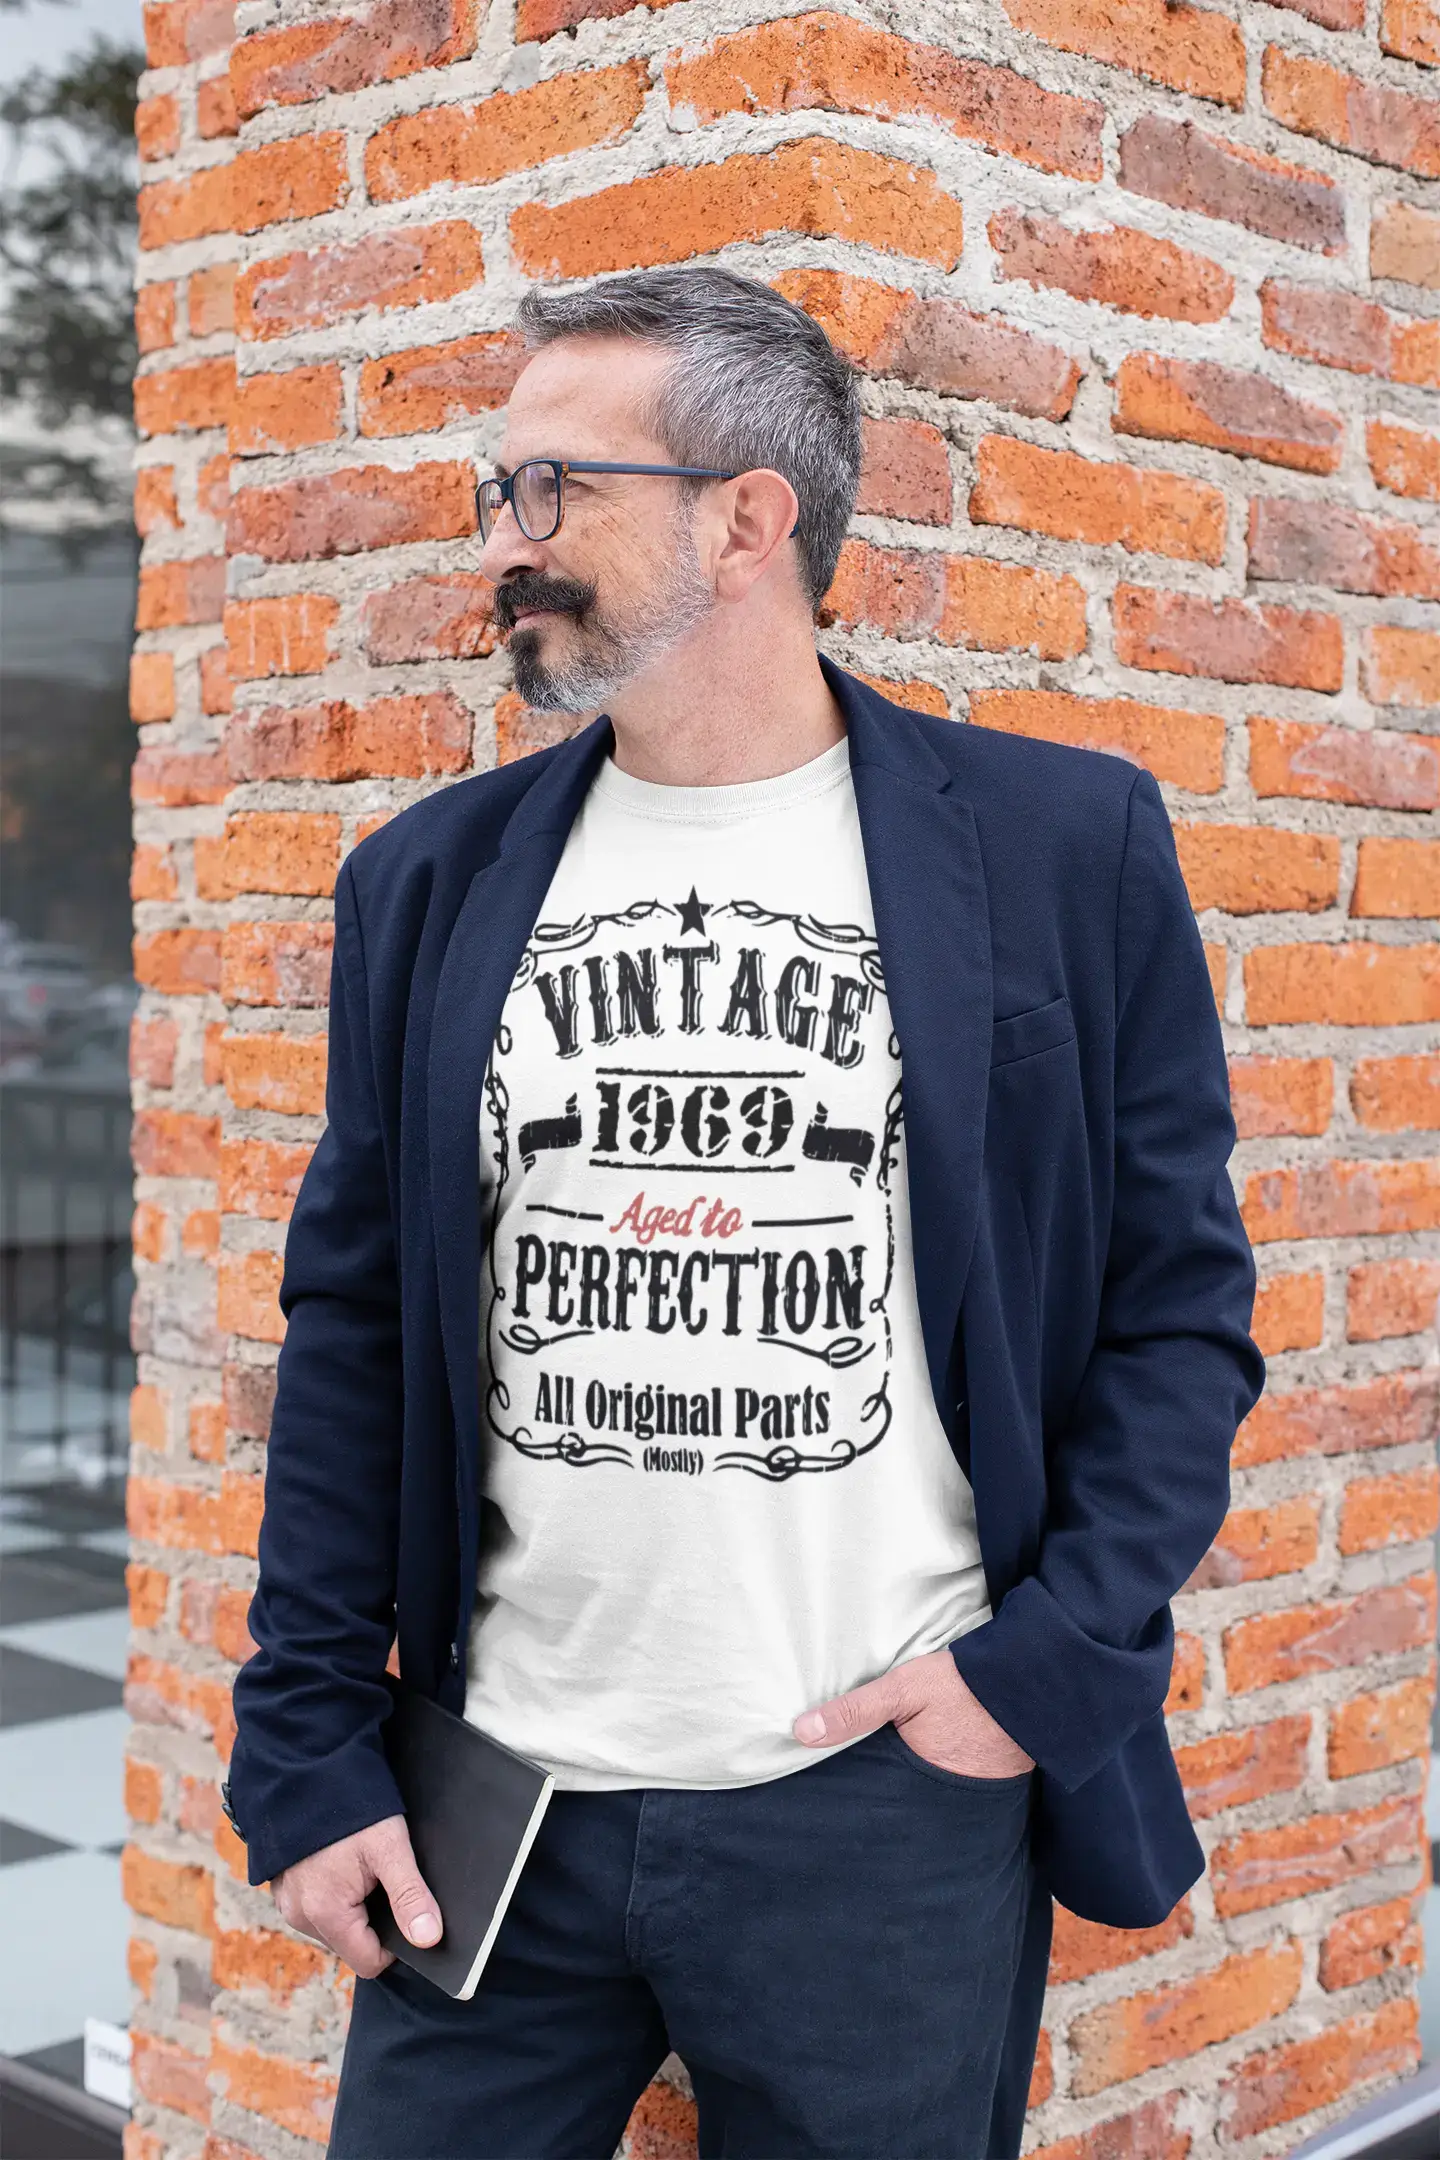 1969 Vintage Aged to Perfection Herren T-Shirt Weiß Geburtstagsgeschenk 00488